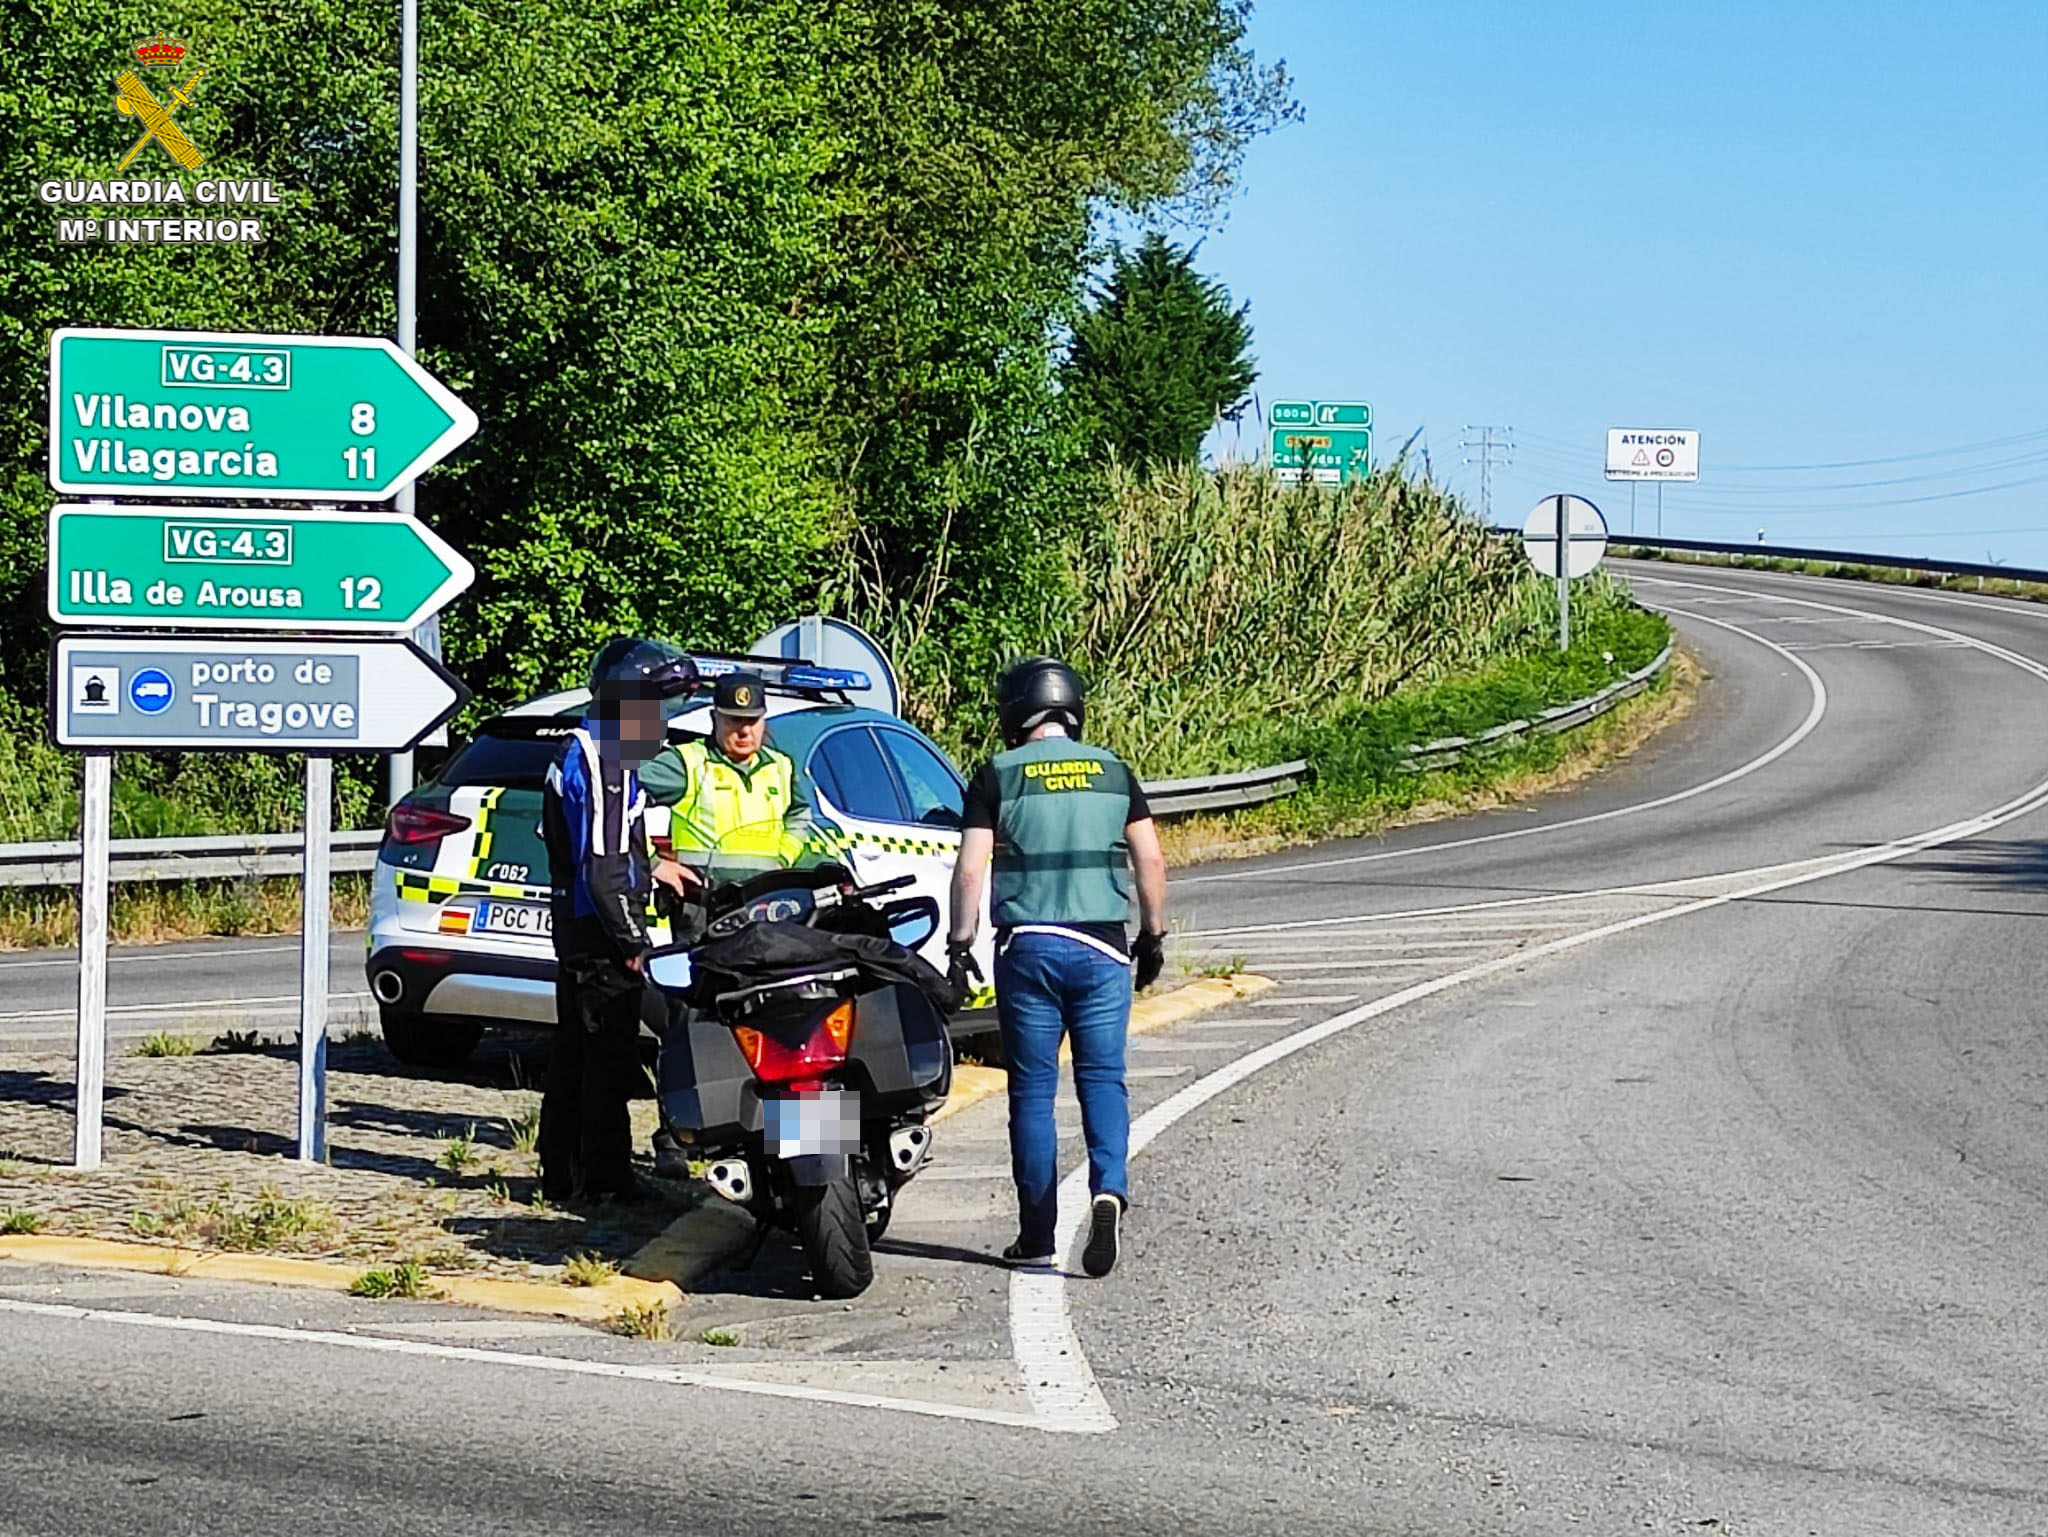 Motos camufladas de la Guardia Civil para controlar el tráfico en las carreteras de la provincia